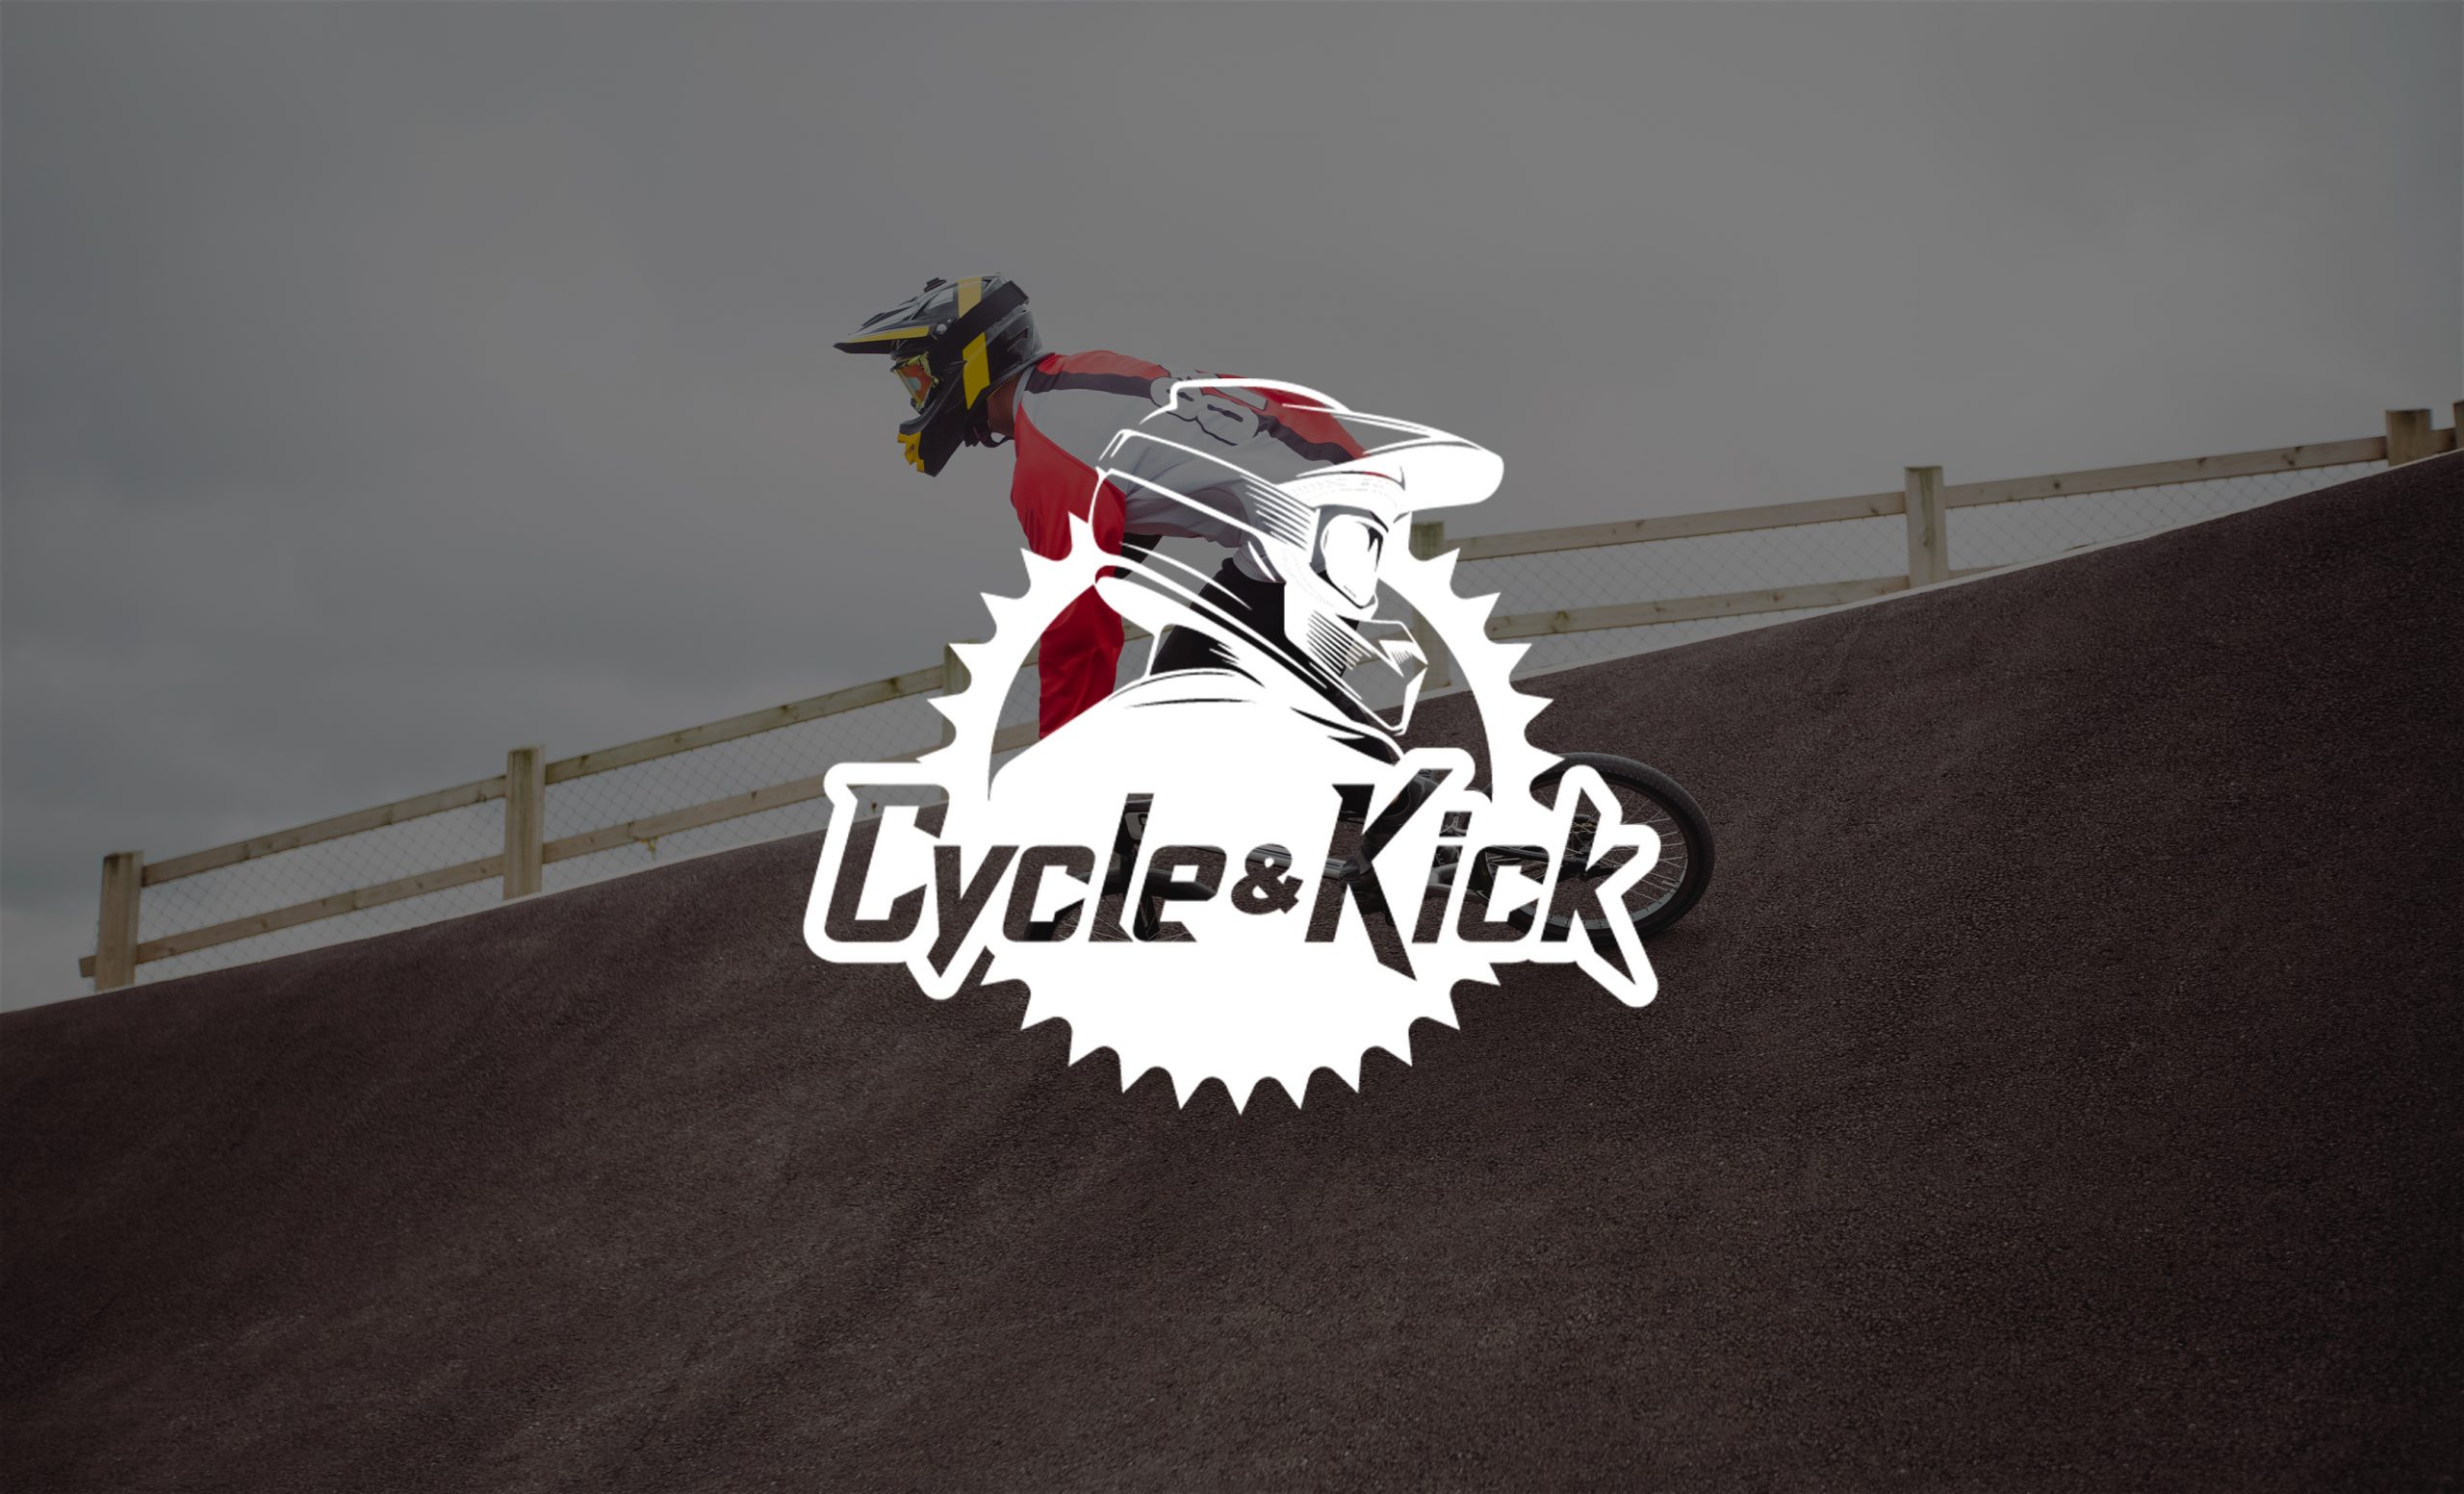 Cycle & Kick